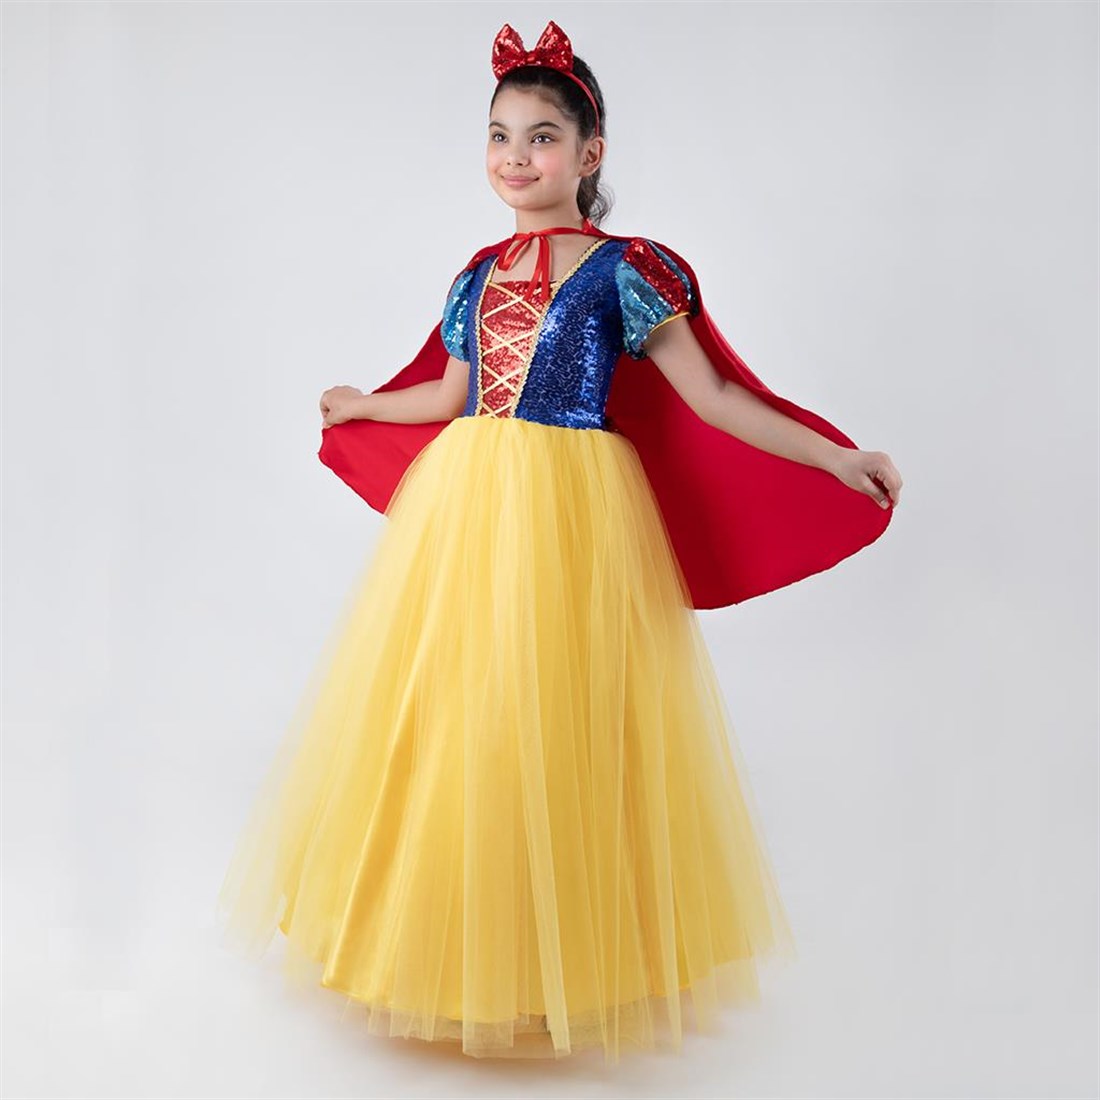 Pamuk Prenses Kostümü - Pelerinli Prenses Kostümü Full Set 7-9 Yaş (CLZ)